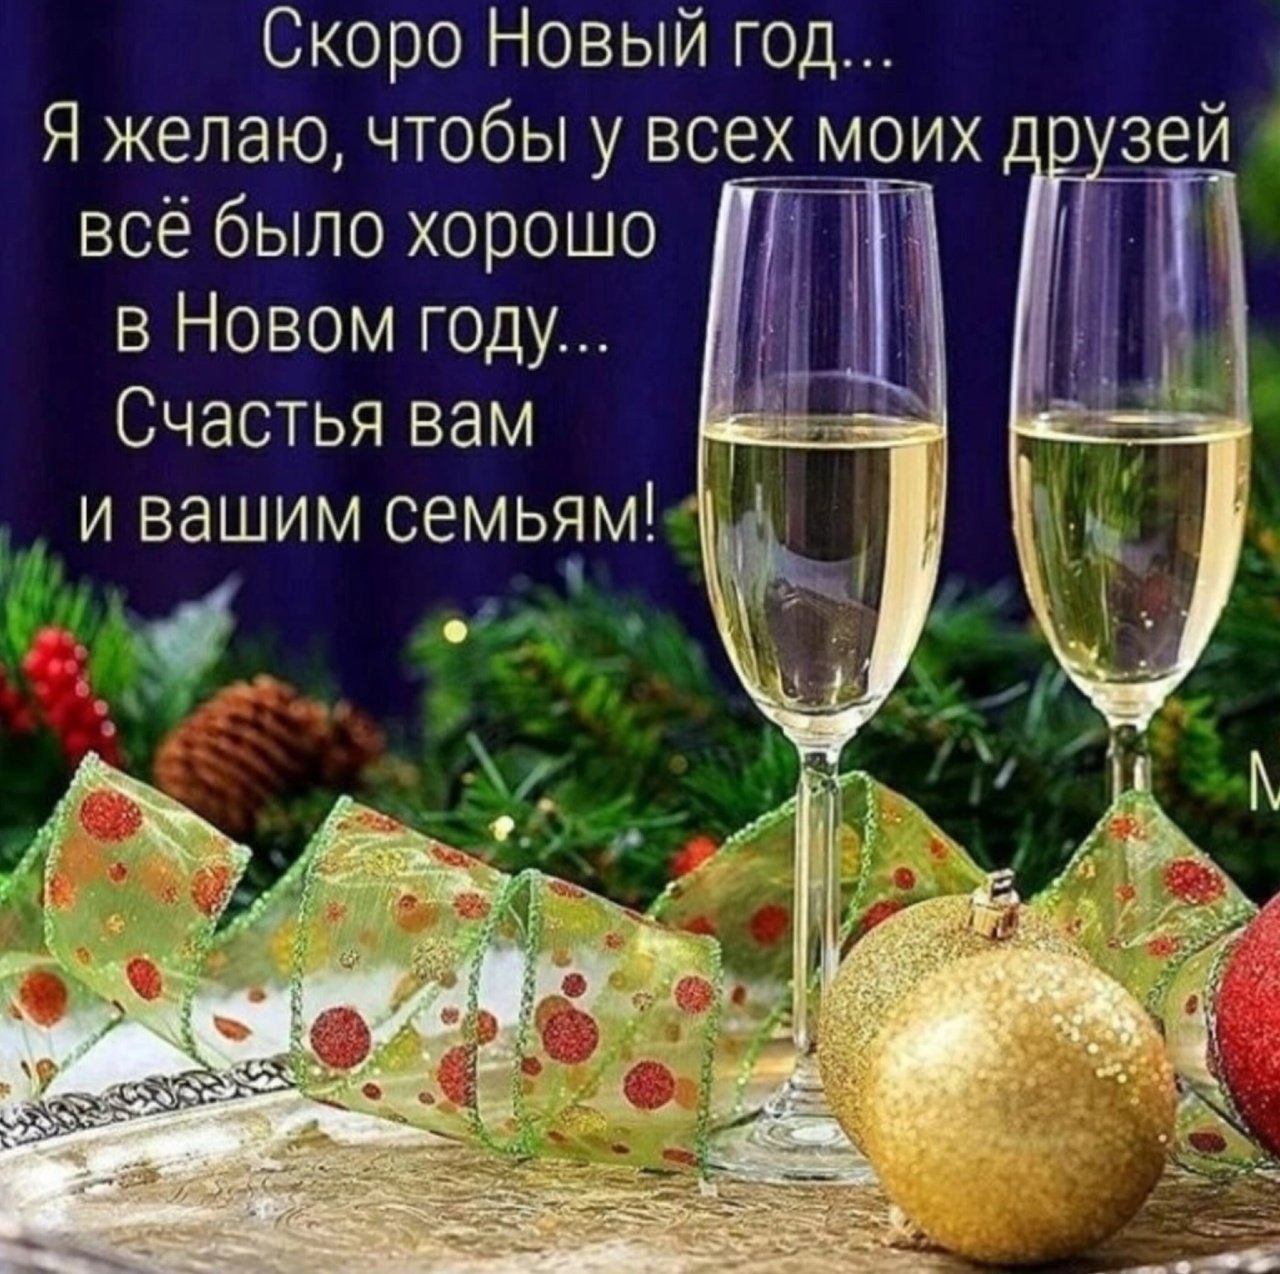 С новым годом лучшим друзьям. Поздравление с новым годом друзьям. Поздравления с наступающим новым годом друзьям. Пожелания в наступившем году. Открытка поздравление друзей с новым годом.